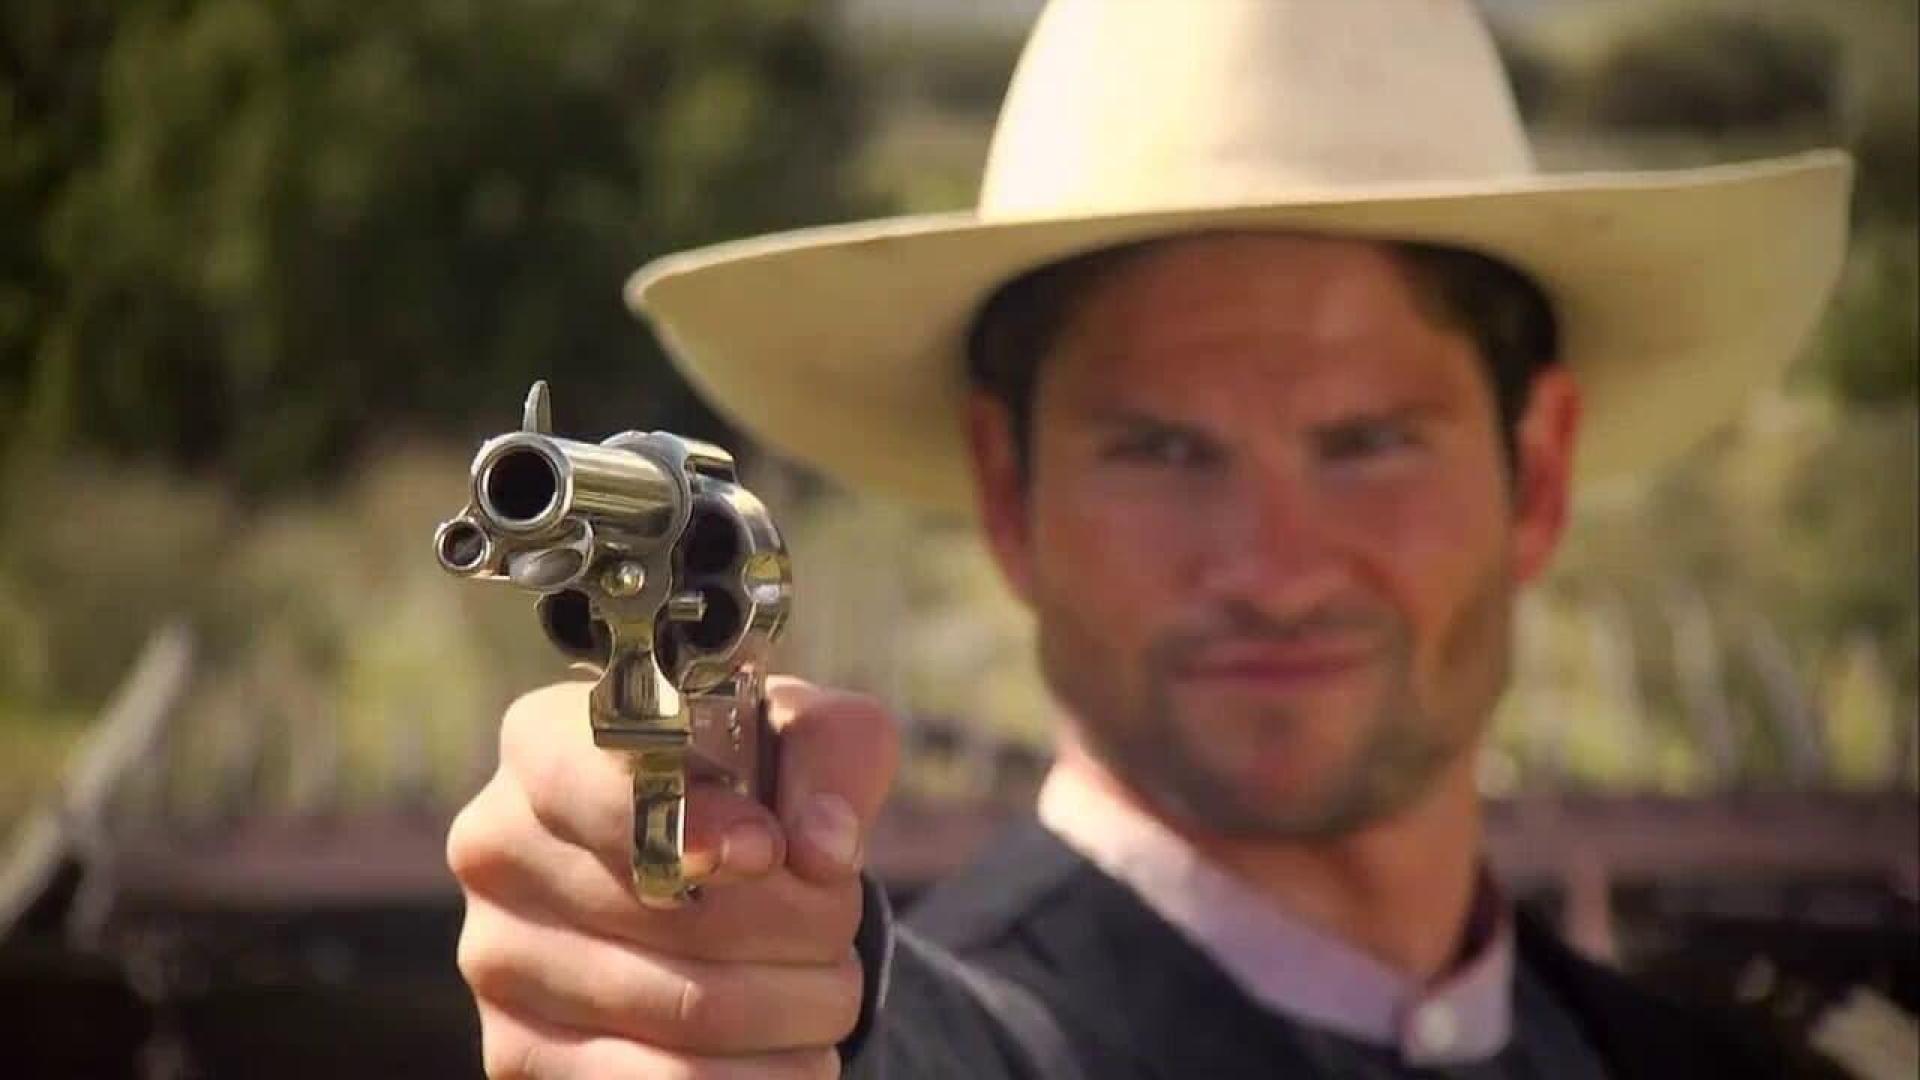 دانلود فیلم Wyatt Earp’s Revenge 2012